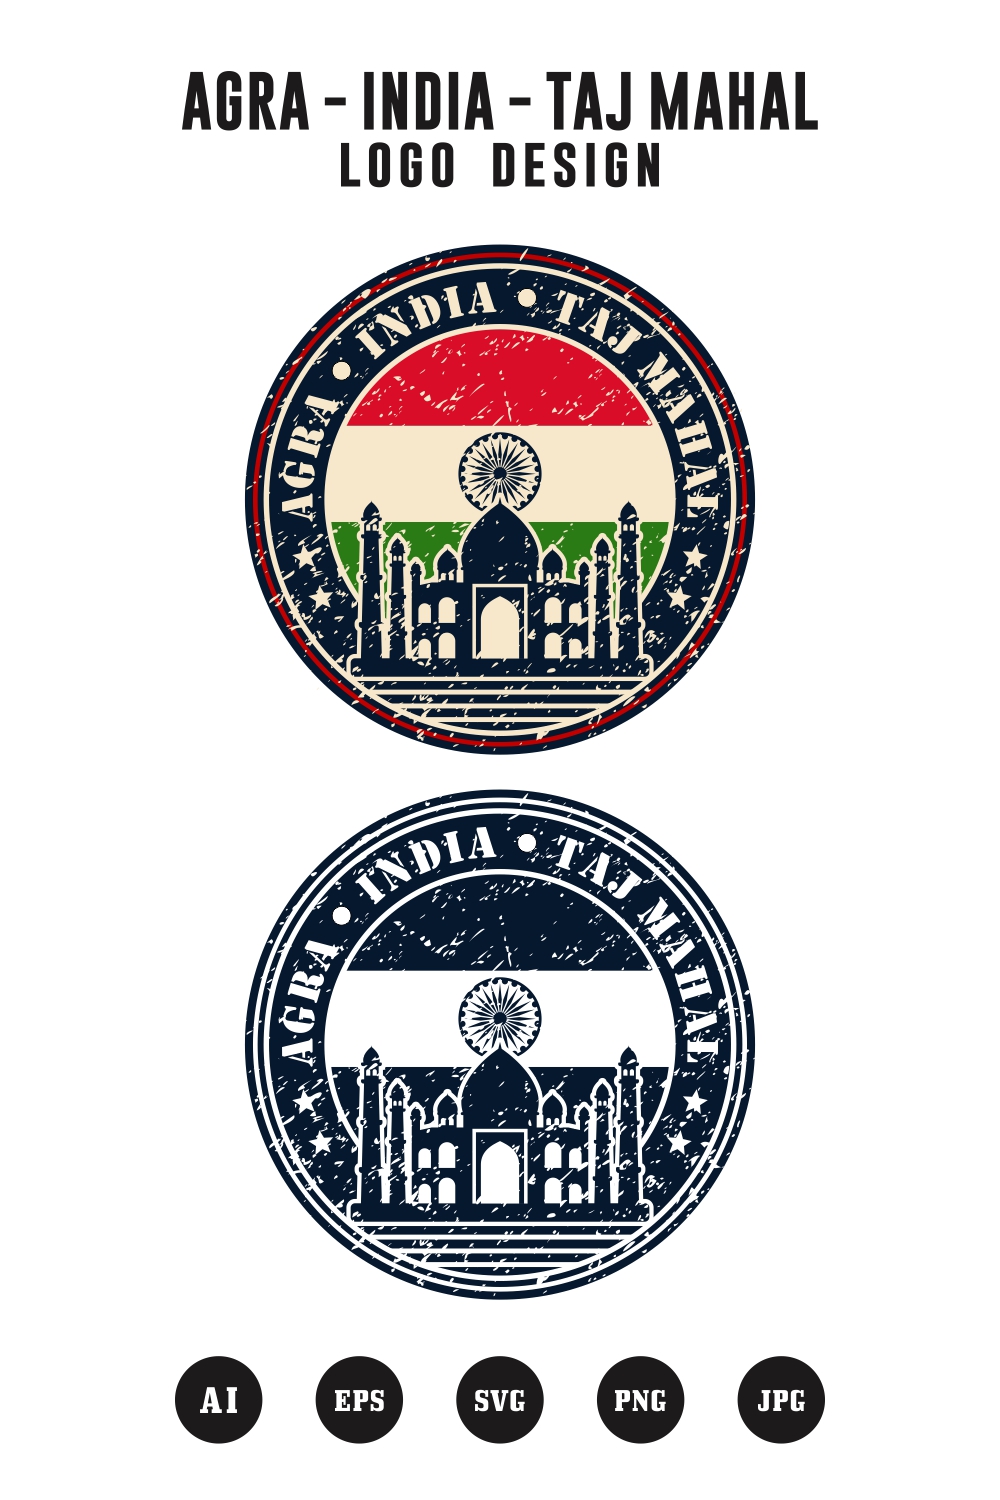 Agra India Tajmahal logo design - $ 4 pinterest preview image.